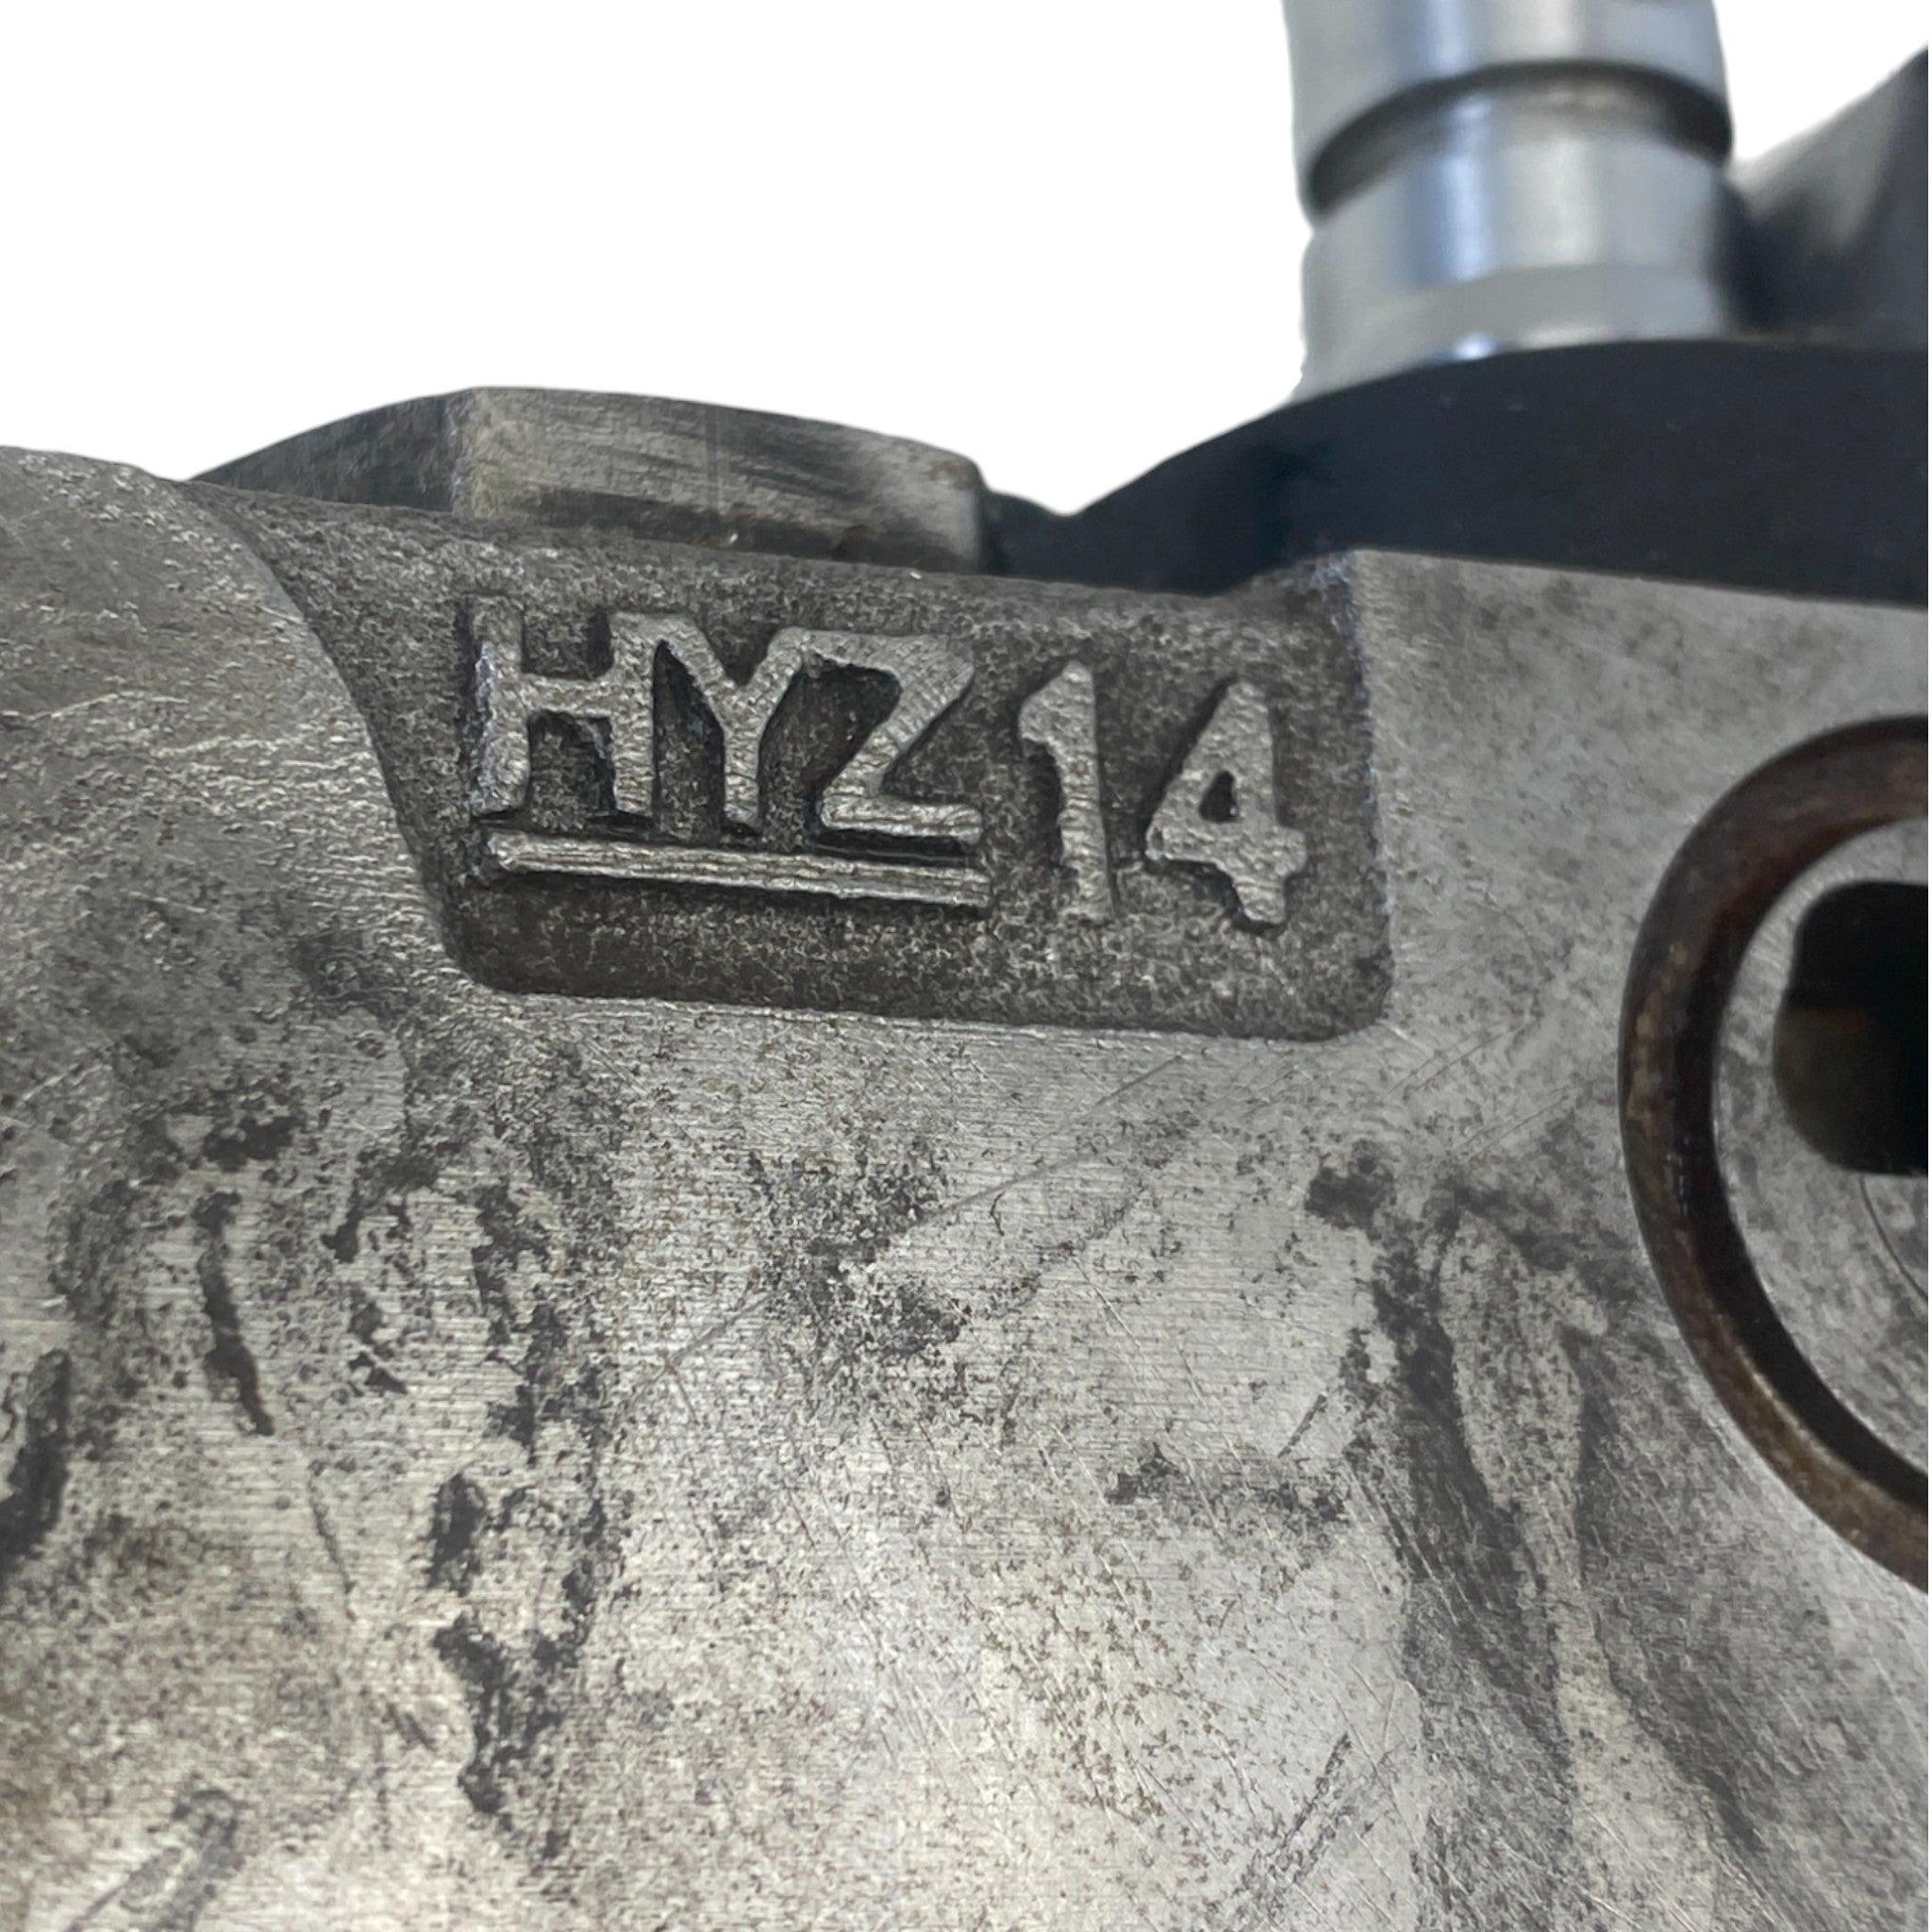 HYZ14V20-10136 Genuine Parker Hannifin Hydraulic Valve Solenoid Section 4 Way